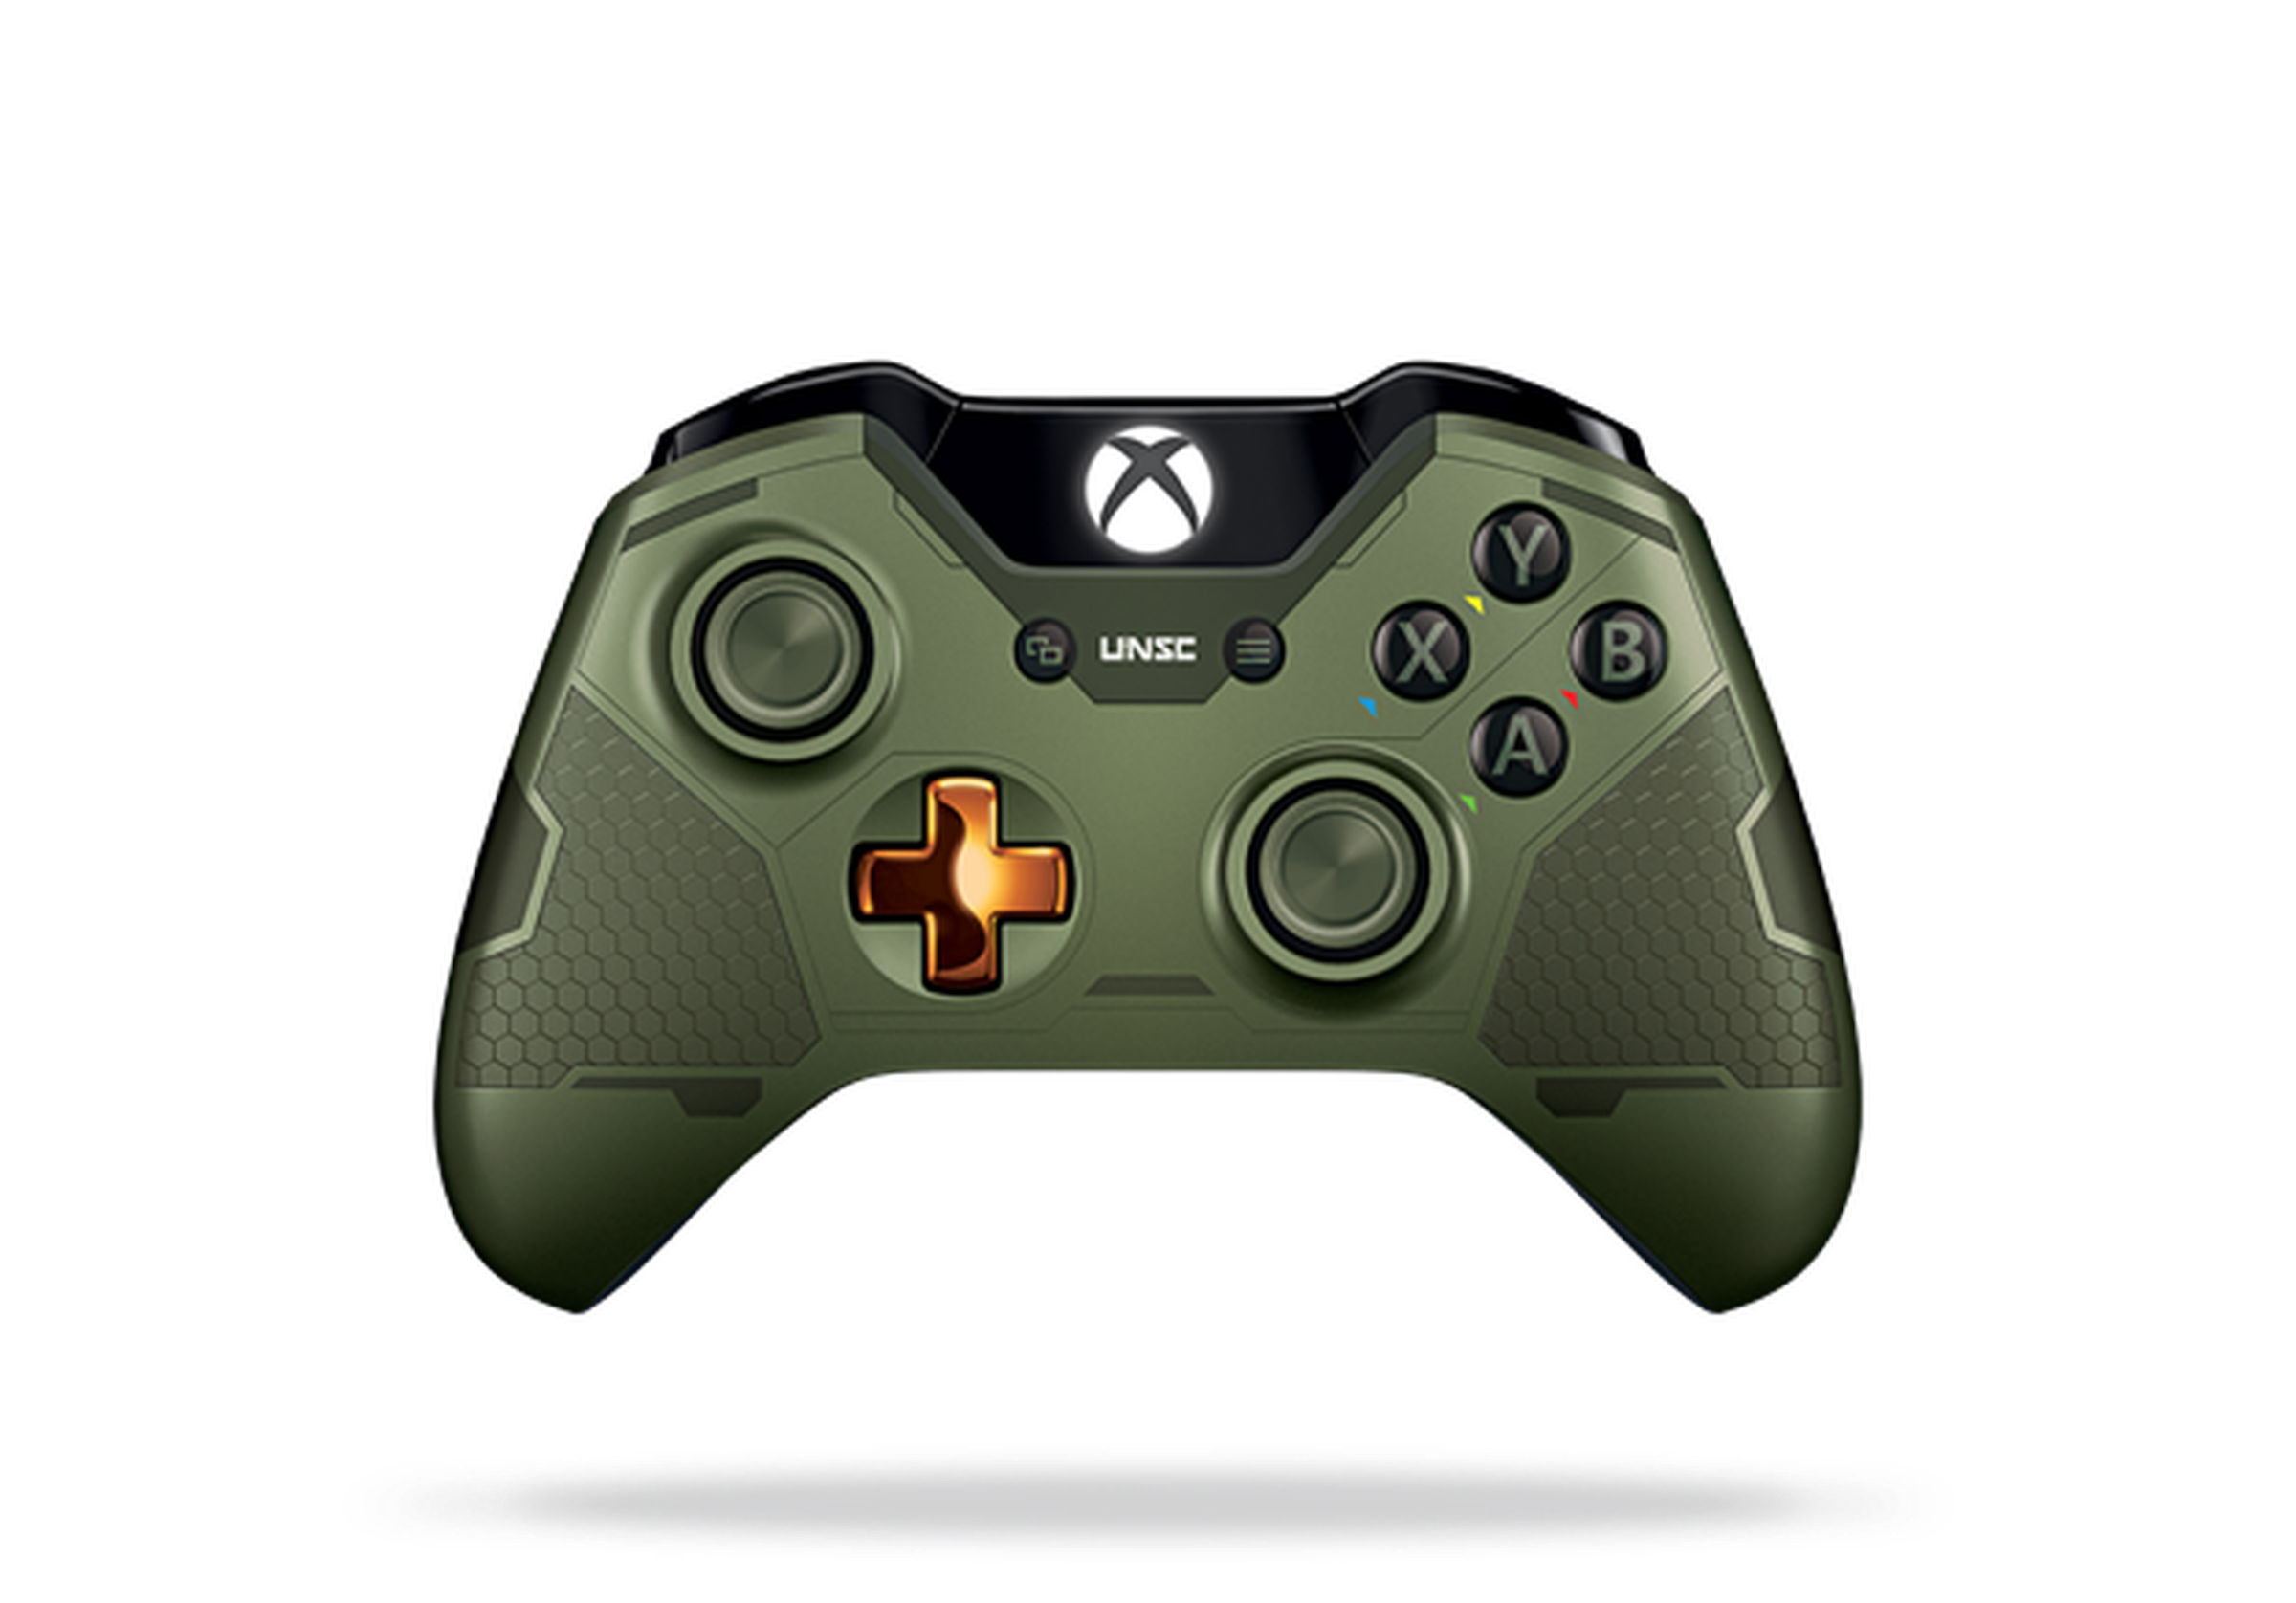 Halo 5 Xbox controller